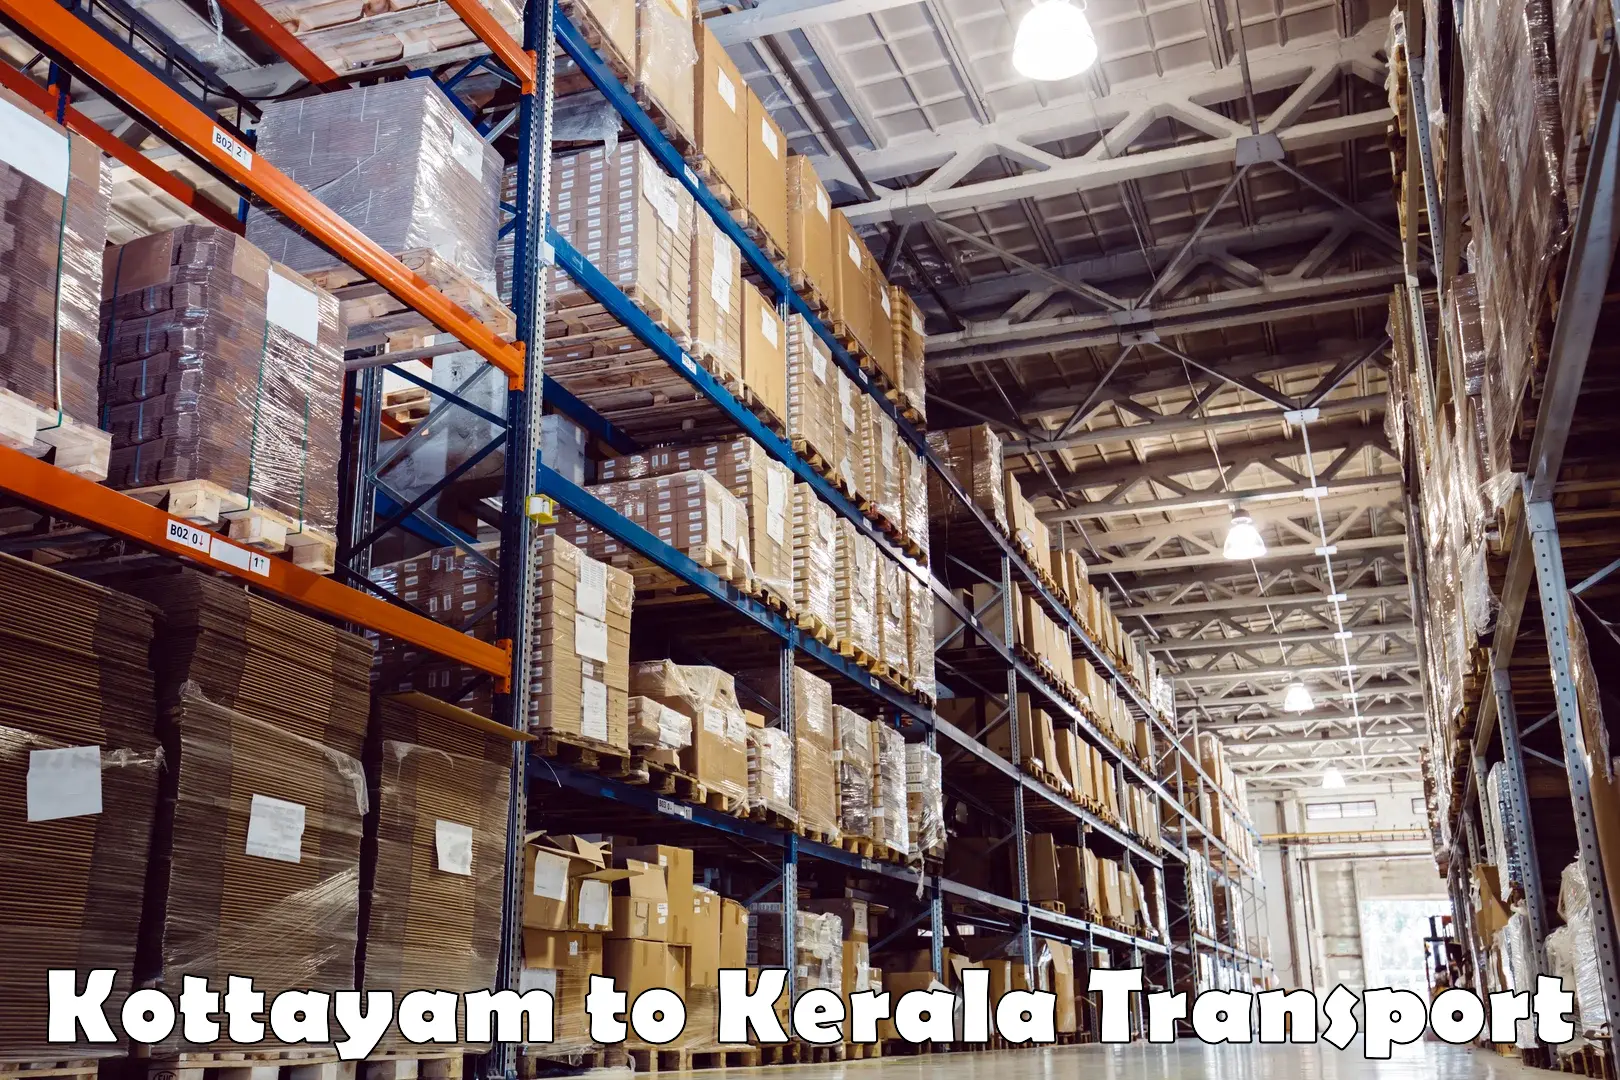 Shipping partner Kottayam to Chervathur